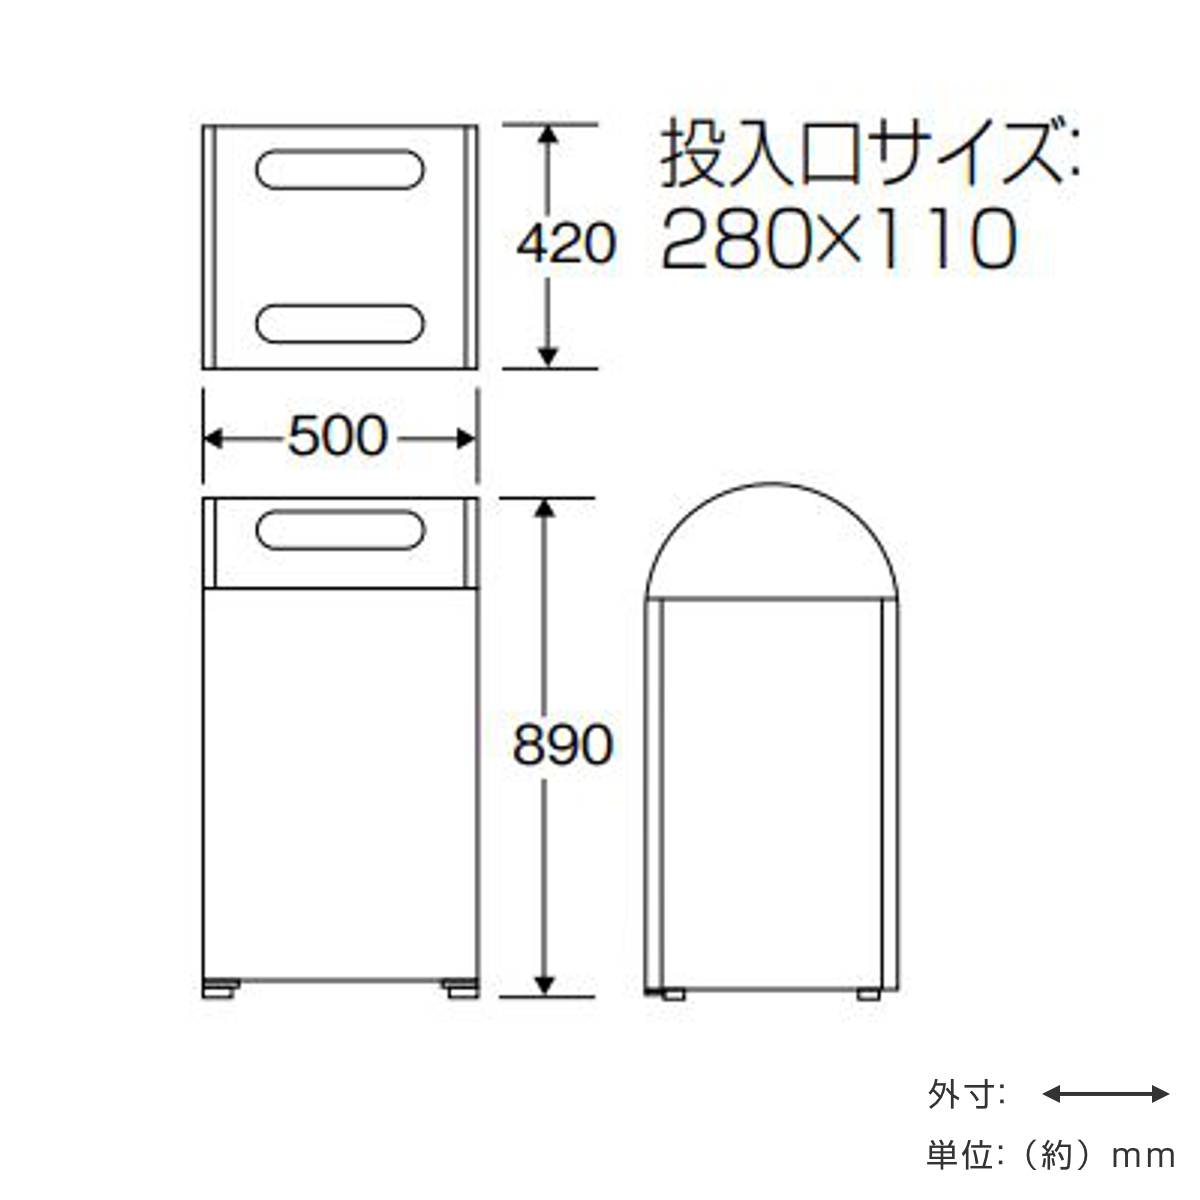 大阪販売中 山崎産業【環境用品】リサイクルボックス アークライン L-1